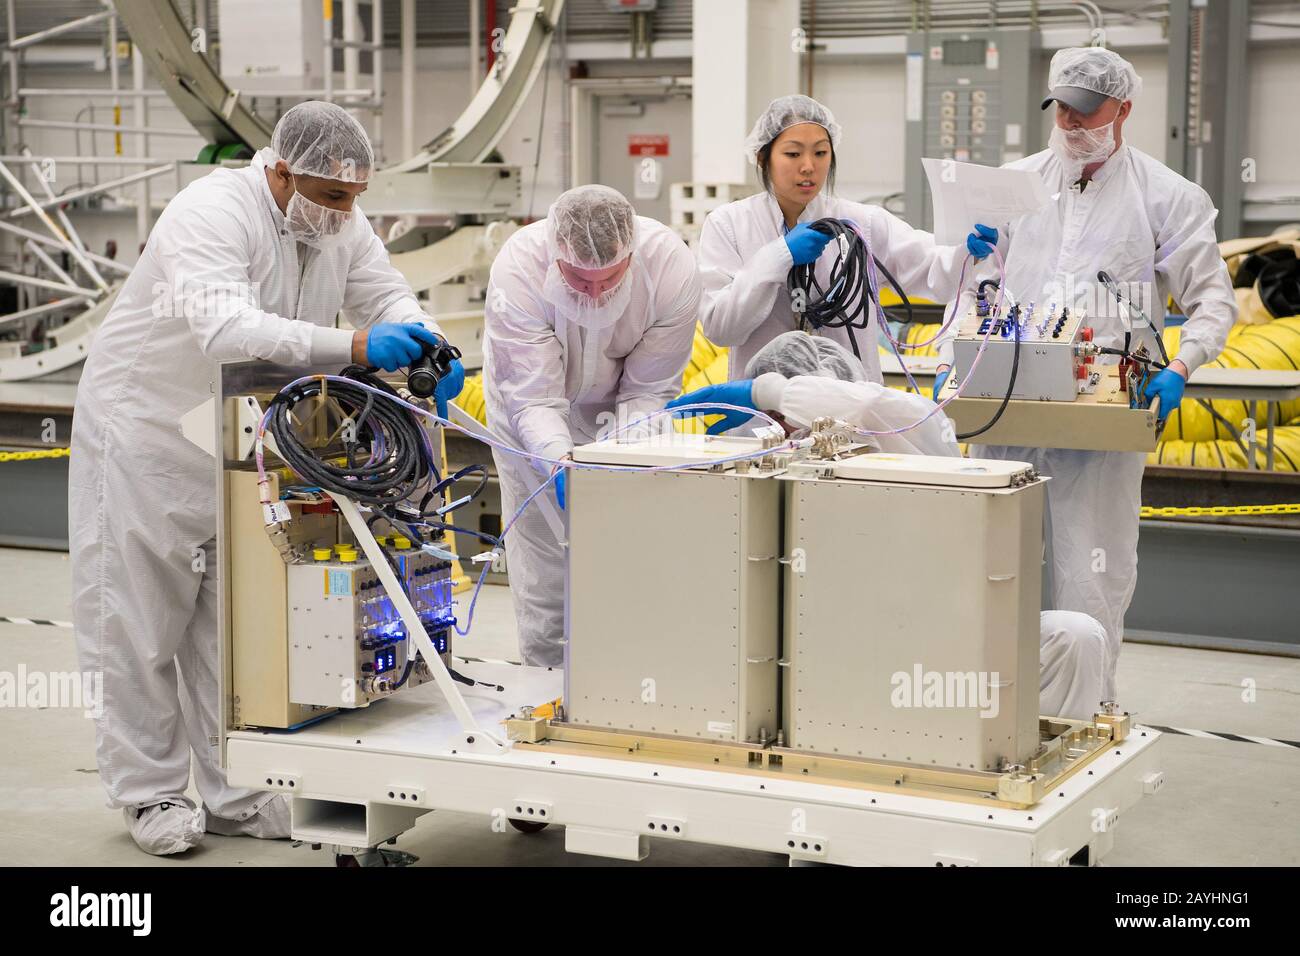 Die Missionsingenieure erhalten und bereiten wissenschaftliche und Forschungs- und Lebensmittelartikel für die endgültige Frachtladung in die Cygnus-Raumfähre zur Nachversorgung an Bord der Northrop Grumman Antares Rakete am 8. Februar 2020 in der Horizontal Integration Facility (HIF) der Wallops Flight Facility der NASA in Virginia vor. Northrop Grummans 13. Vertraglich vereinbarte Mission zur Ladungsrückversorgung mit der NASA zur Internationalen Raumstation wird mehr als 7.500 Pfund an Wissenschaft und Forschung, Besatzungsversorgung und Fahrzeughardware an das Orbitallabor und seine Crew liefern. NASA Foto von Aubrey Gemignani/UPI Stockfoto